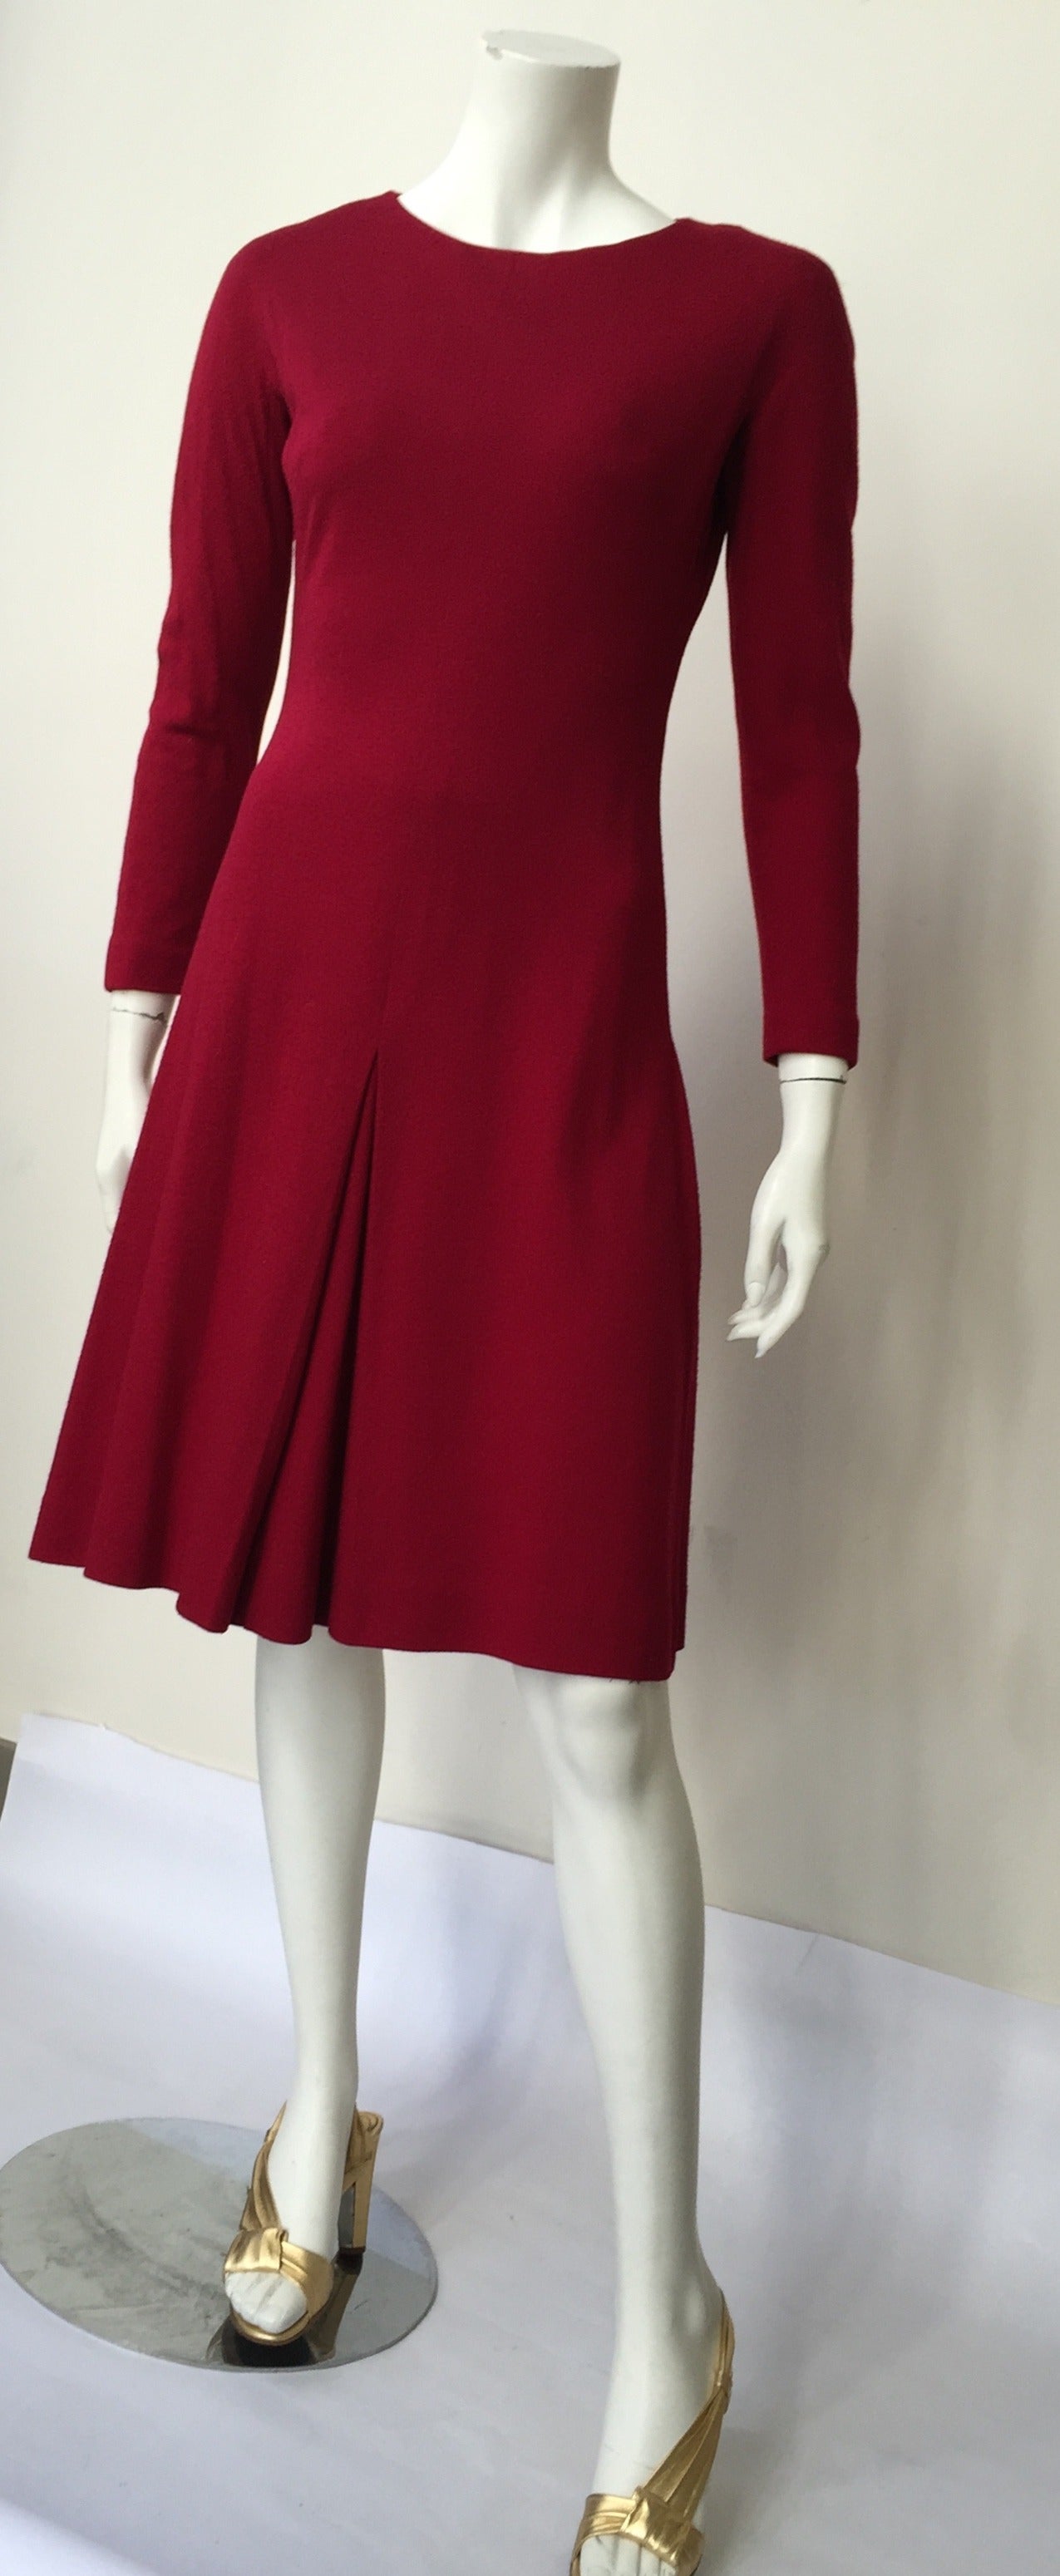 Women's Anne Fogarty 1960s Wool Dress Size 6.